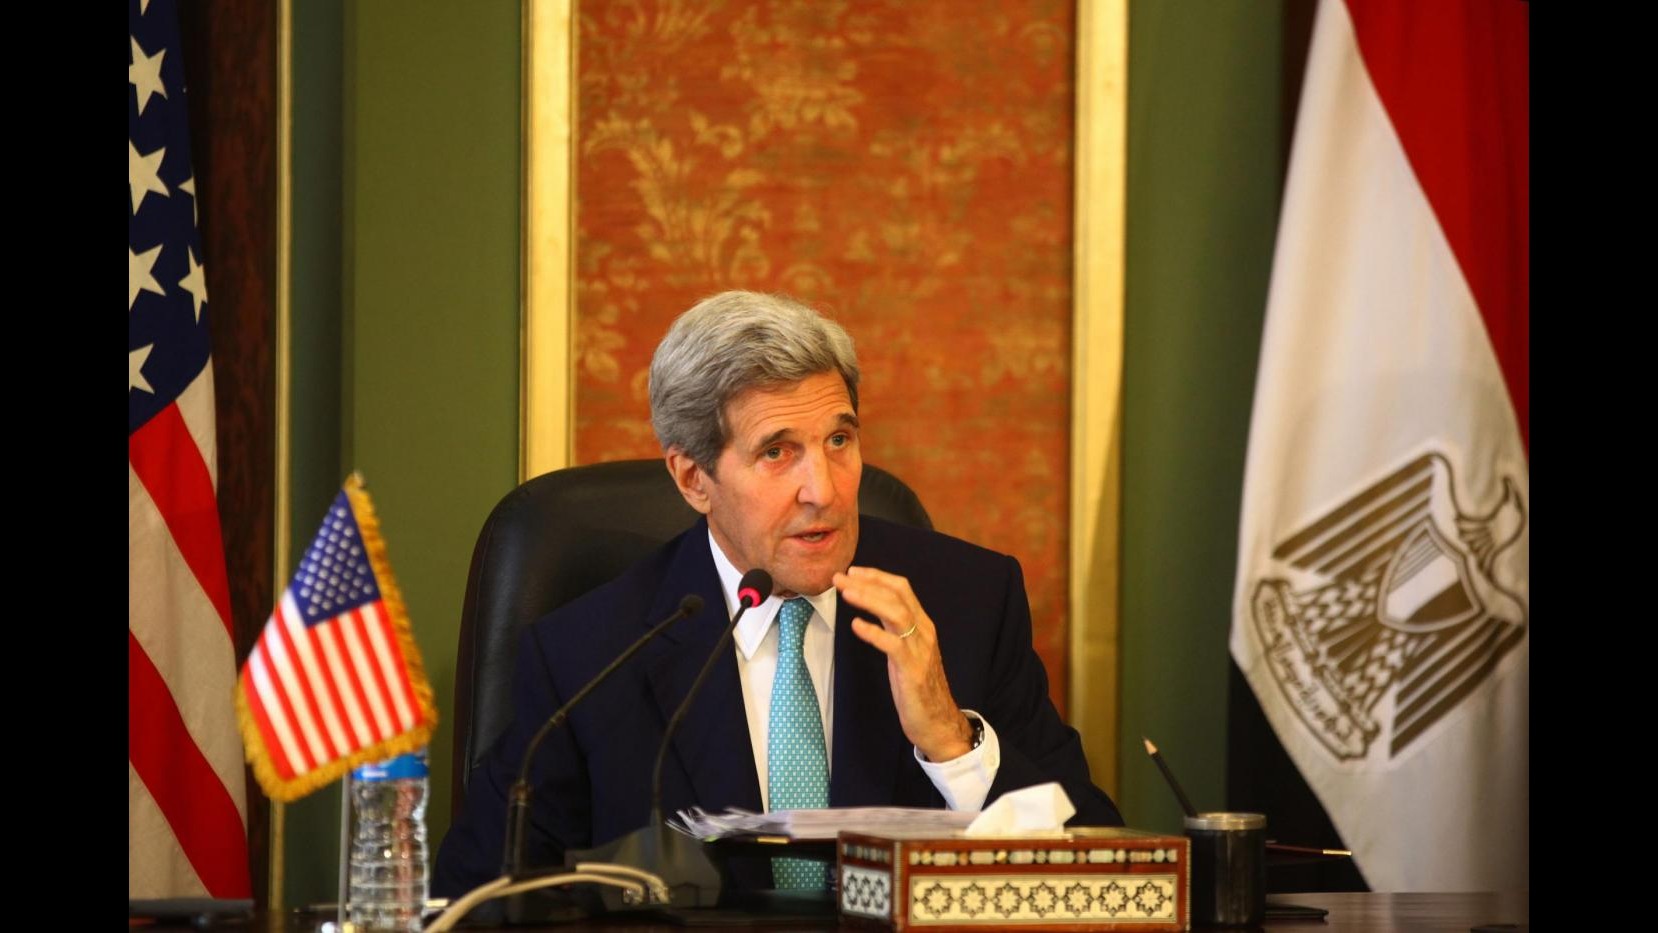 Kerry in Qatar per parlare al Consiglio di cooperazione del Golfo dell’accordo sul nucleare iraniano